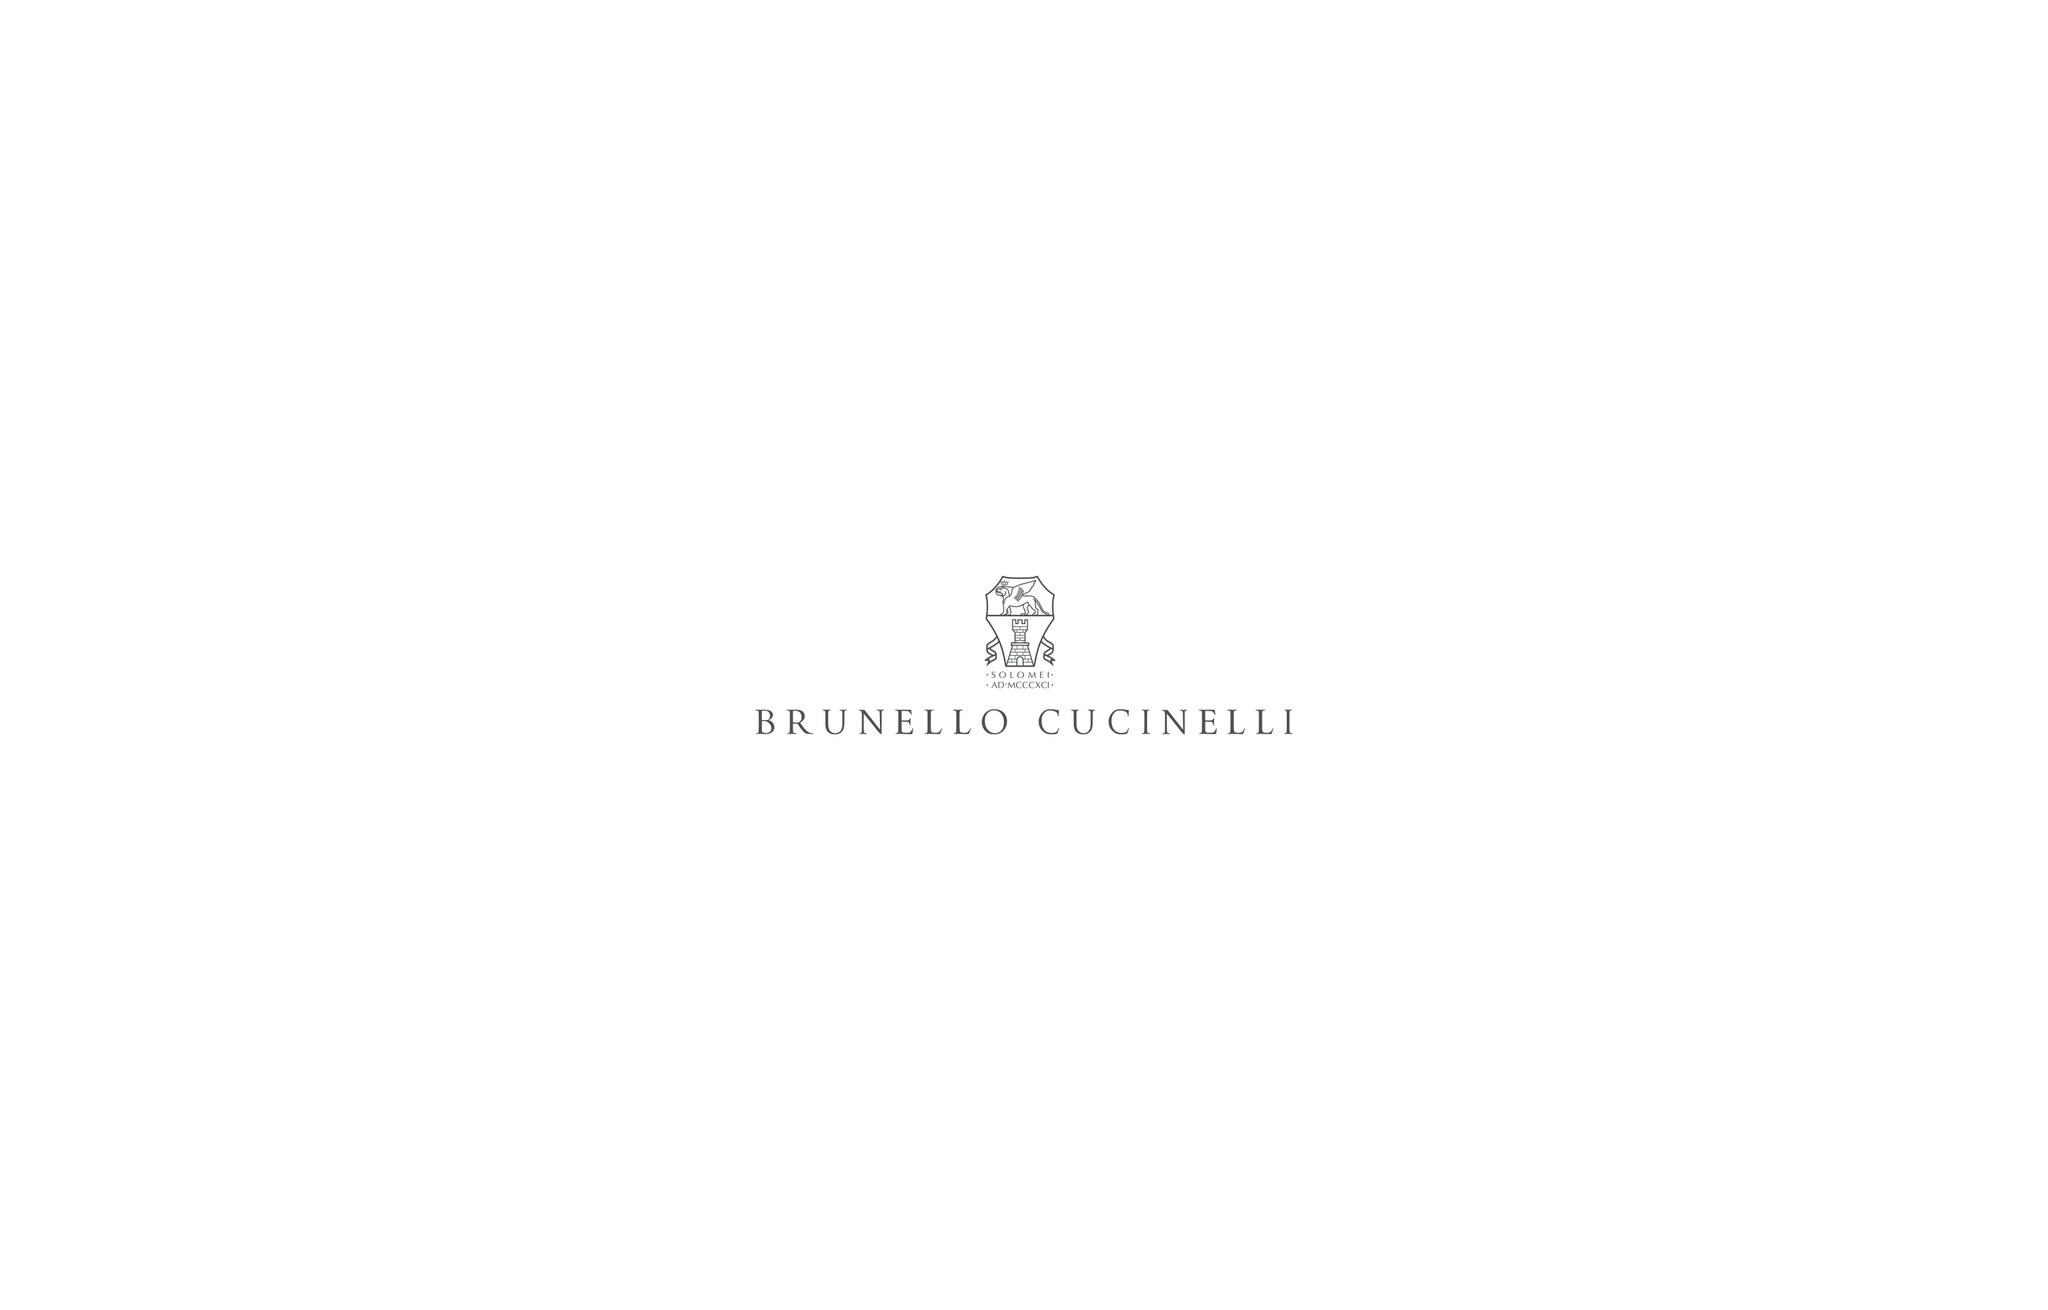  羊毛亚麻混纺斜纹面料短夹克 牛仔蓝 男款 - Brunello Cucinelli 